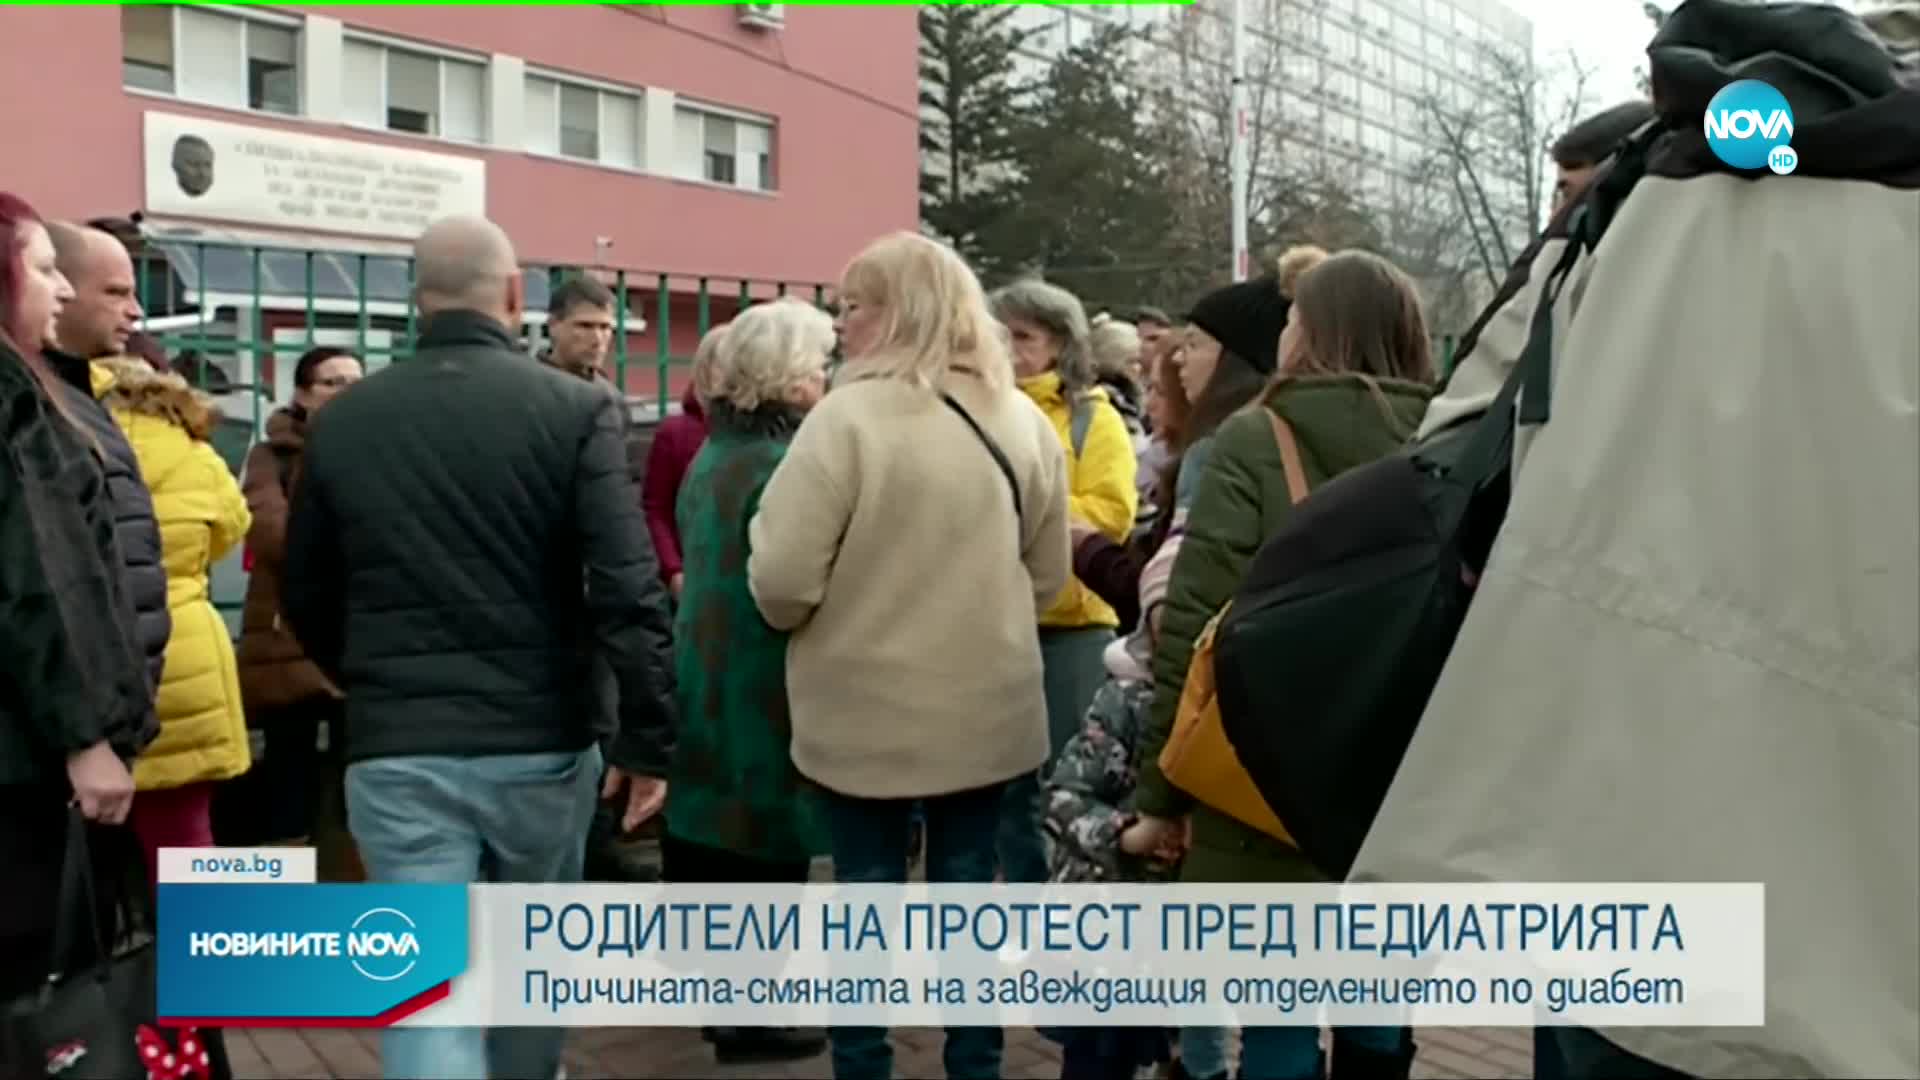 Протест пред педиатрията в София в защита на отстранен лекар